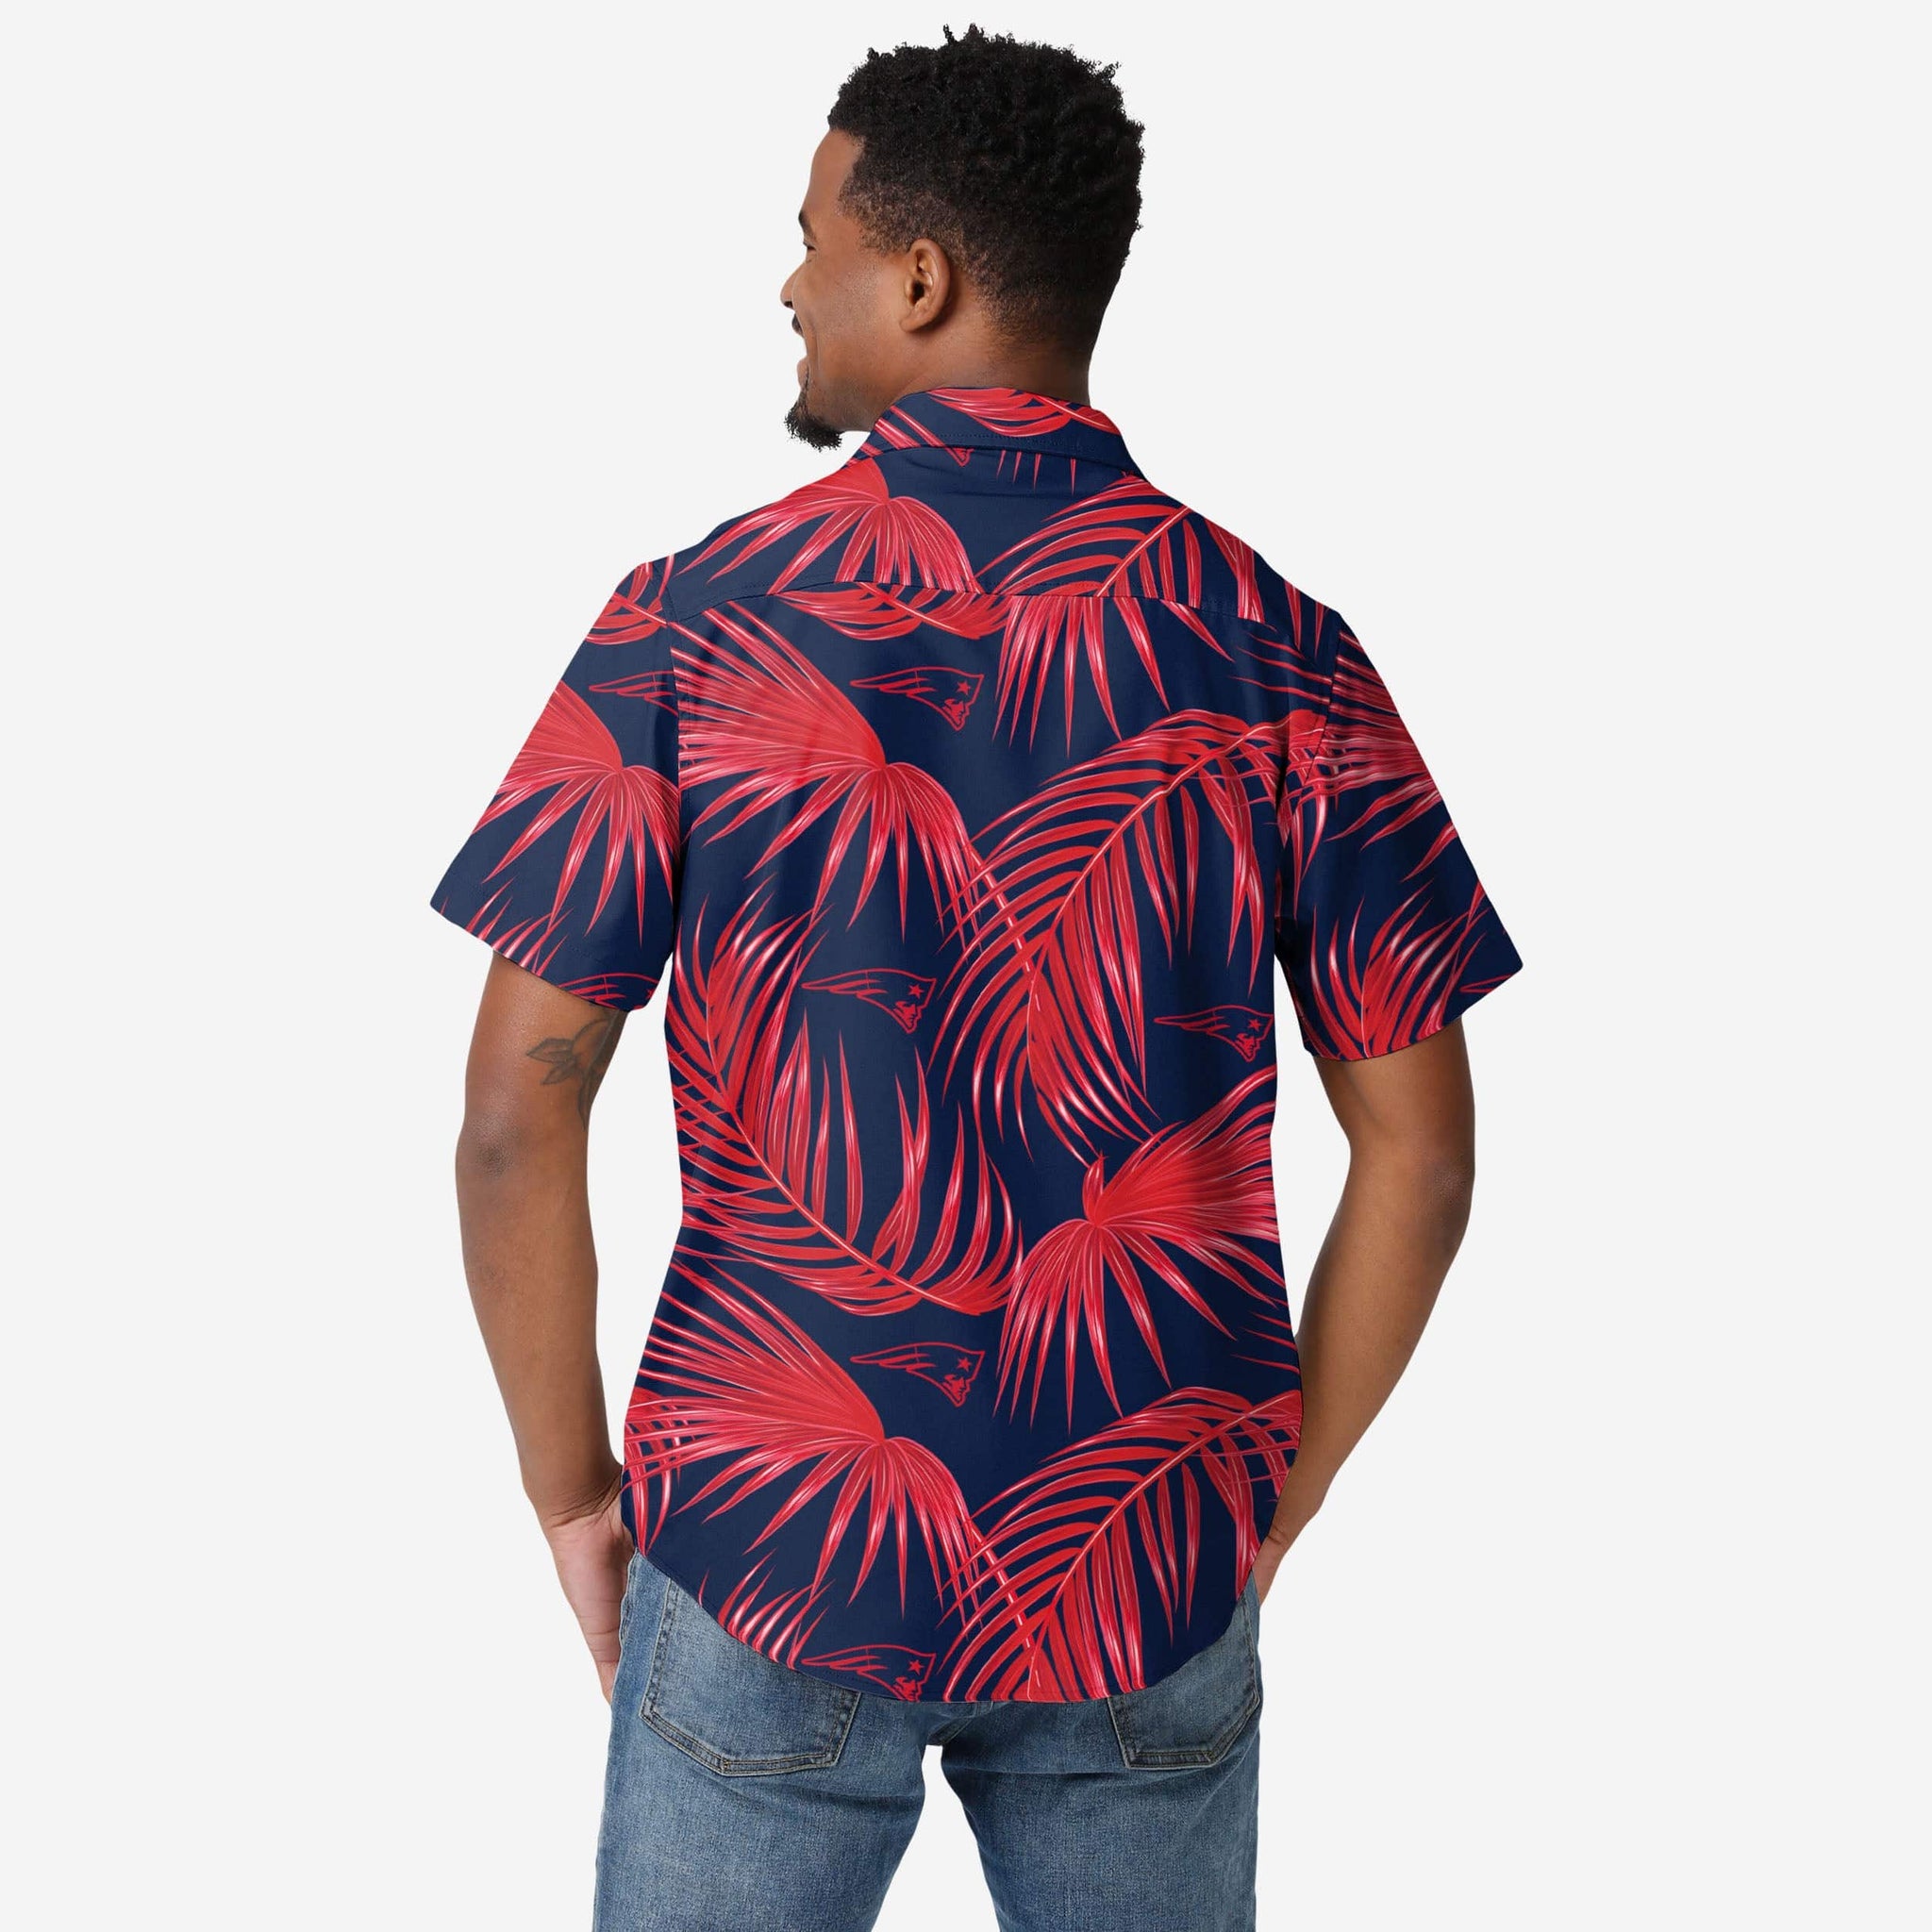 Chicago Bears NFL Flower Hawaiian Shirt Best Gift For Men And Women Fans